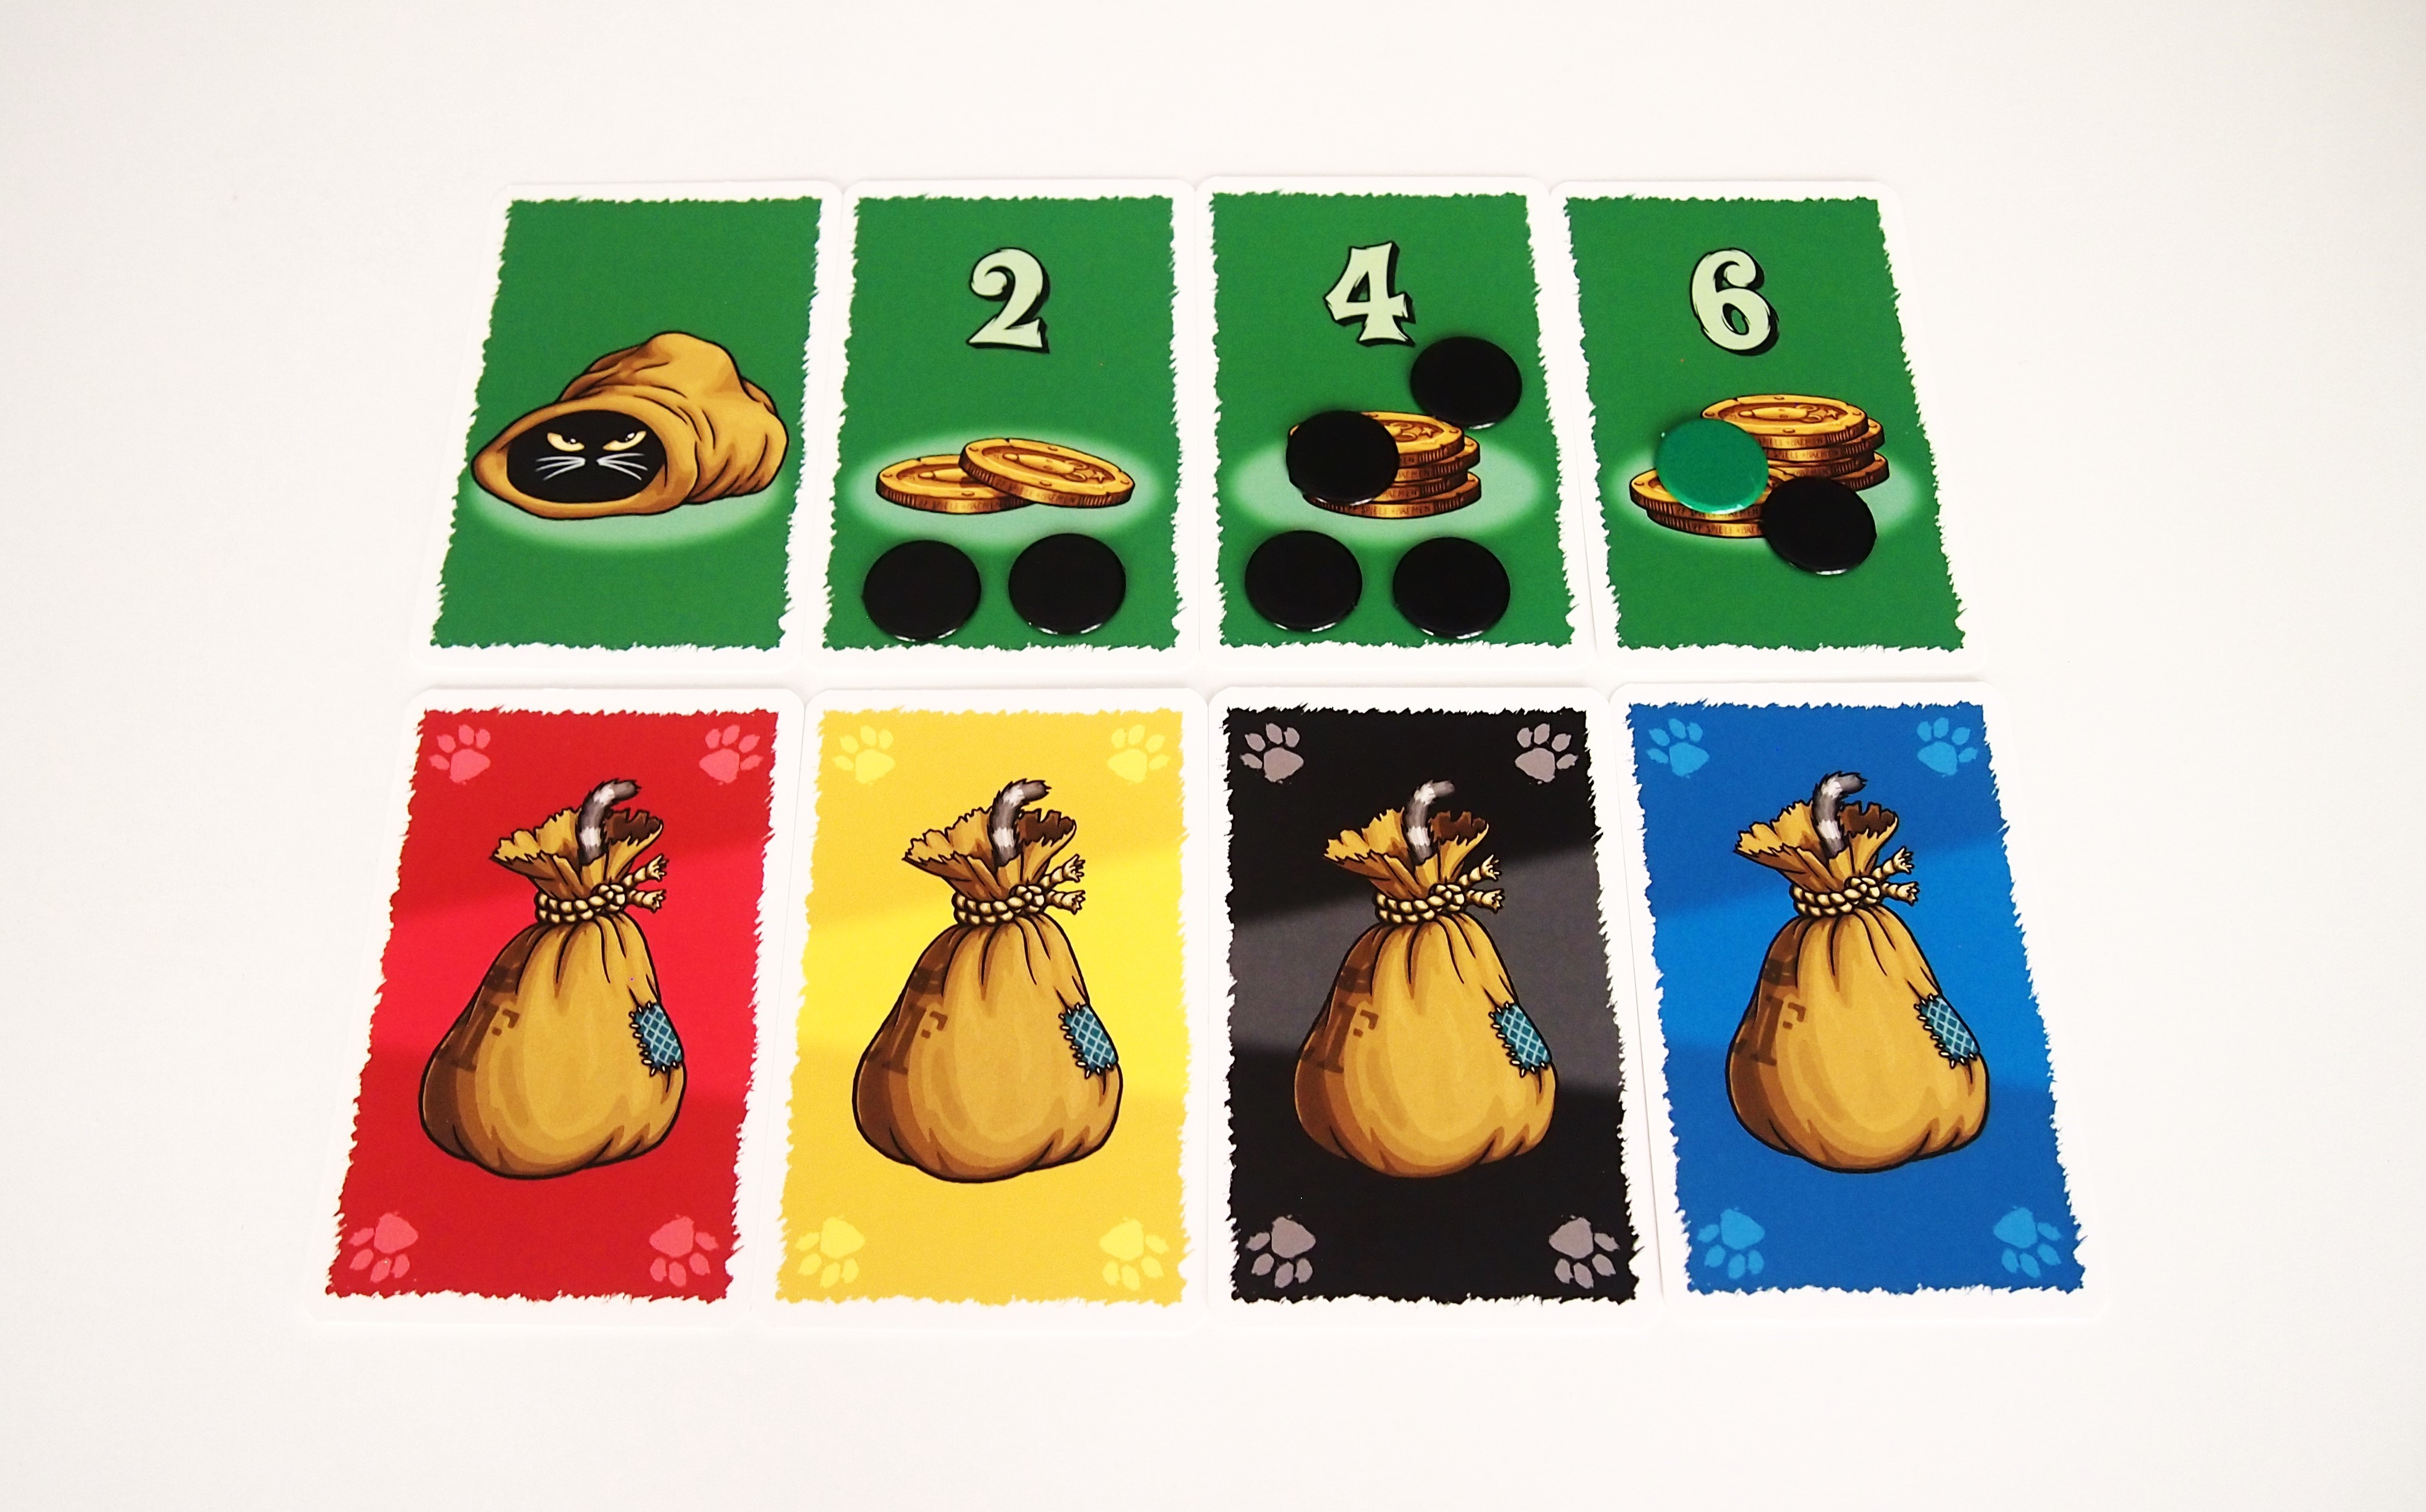 A lo largo de nueve rondas, cada jugador coloca una carta boca abajo. 